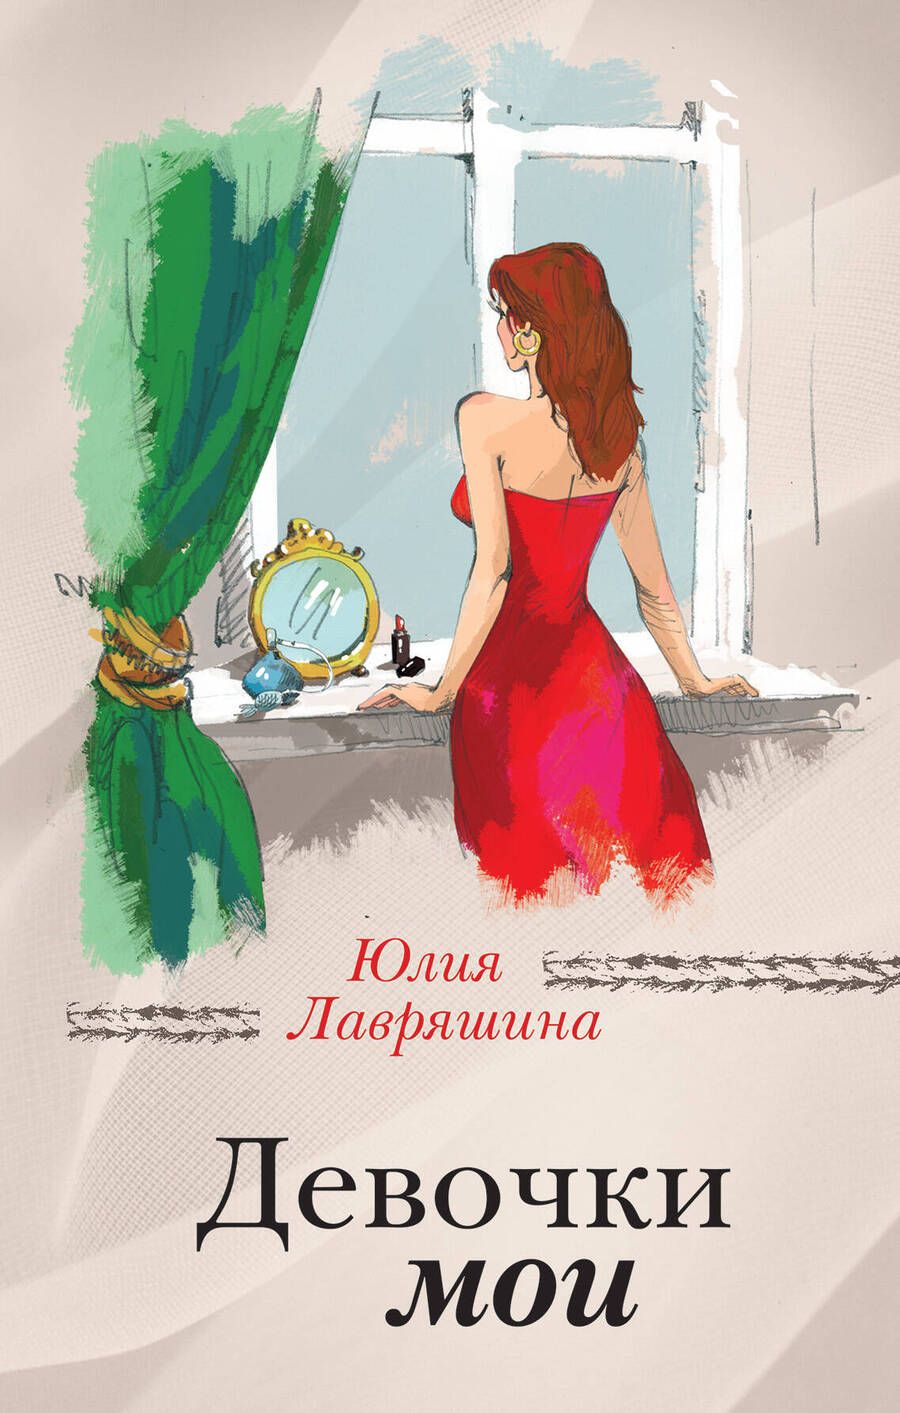 Обложка книги "Юлия Лавряшина: Девочки мои : роман"